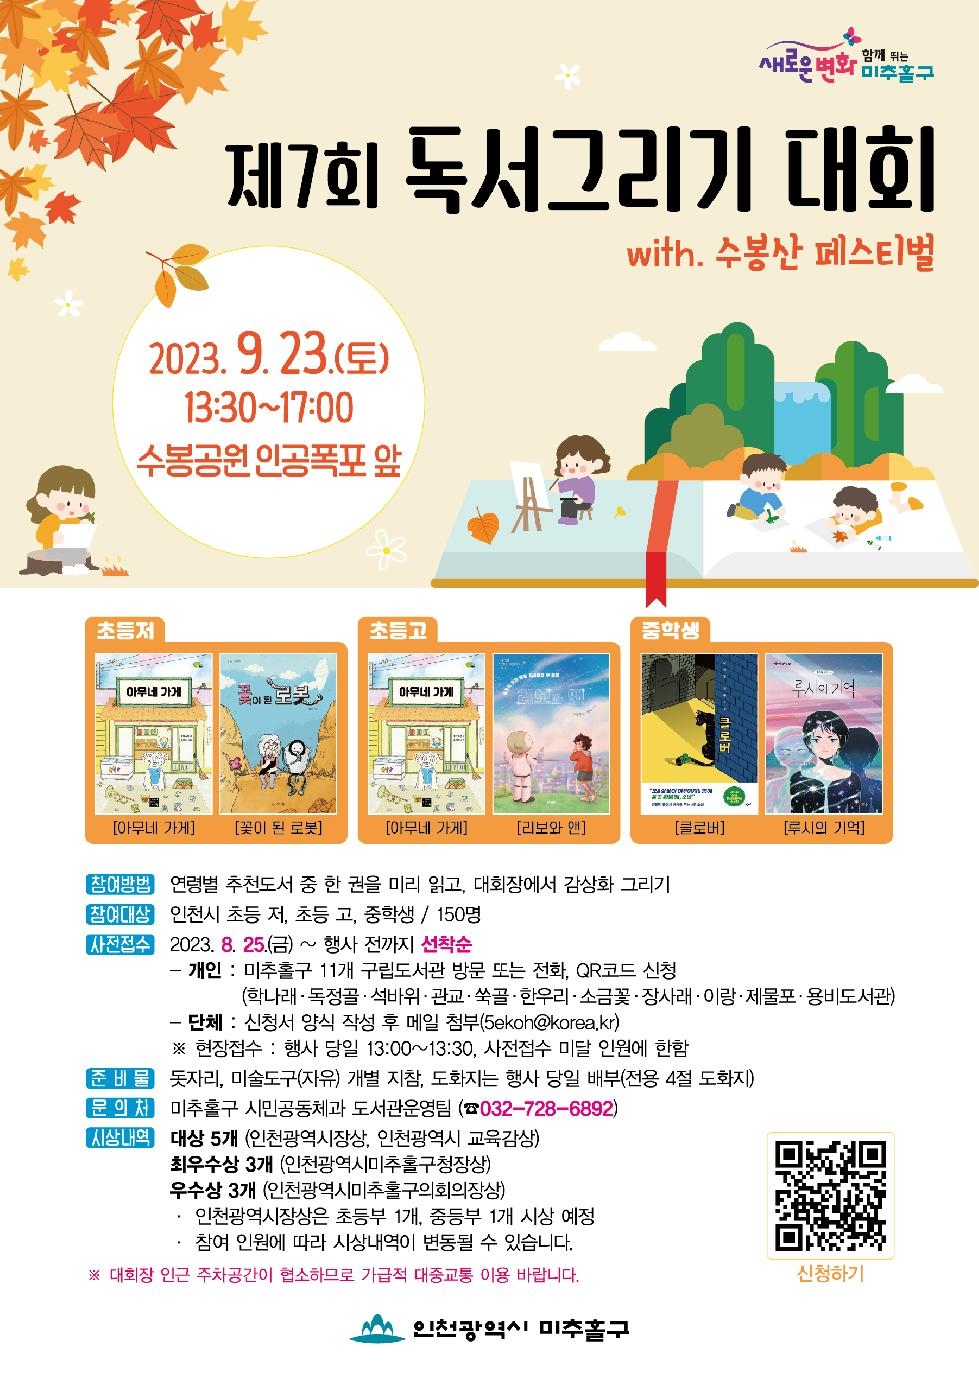 인천 미추홀구립도서관, ‘제7회 독서그리기 대회’ 참가자 모집